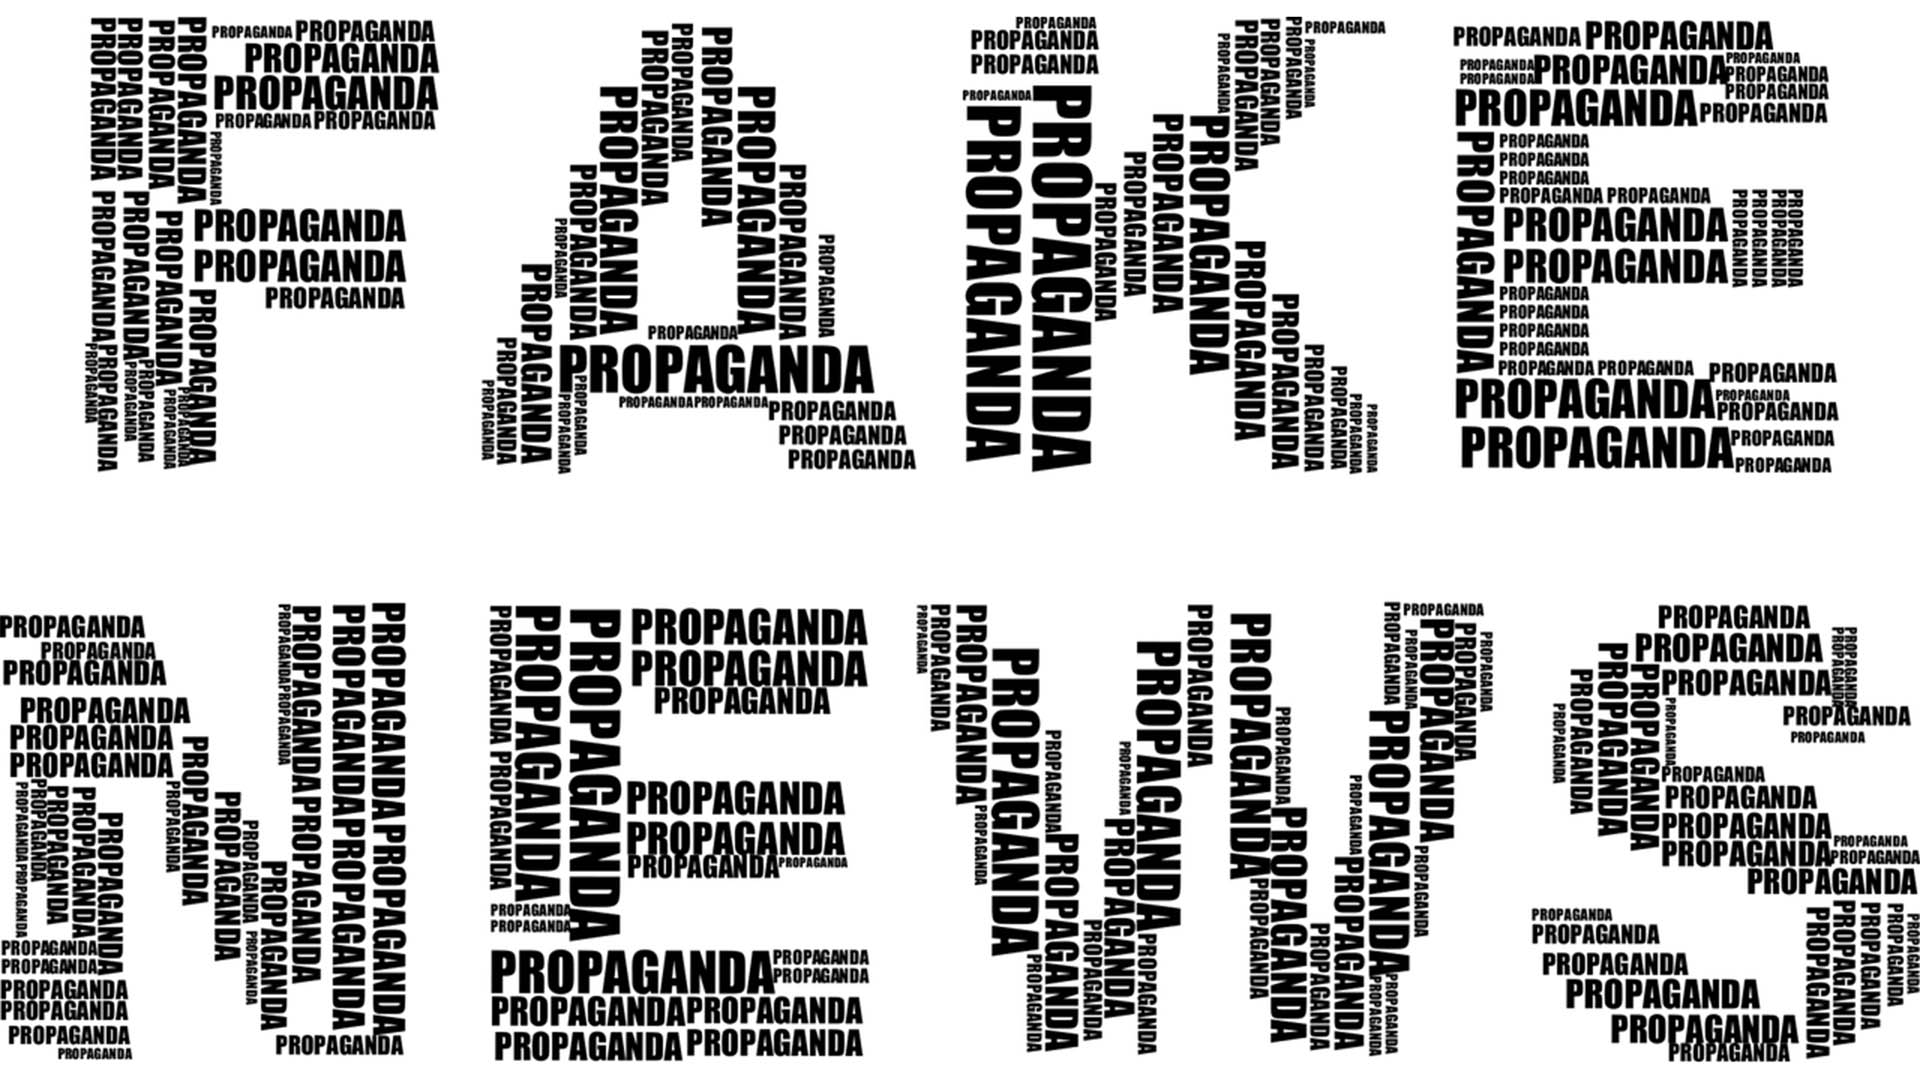 Aus dem ständig wiederholten Wort "Propaganda" wird der SChriftzug Fake News gebildet